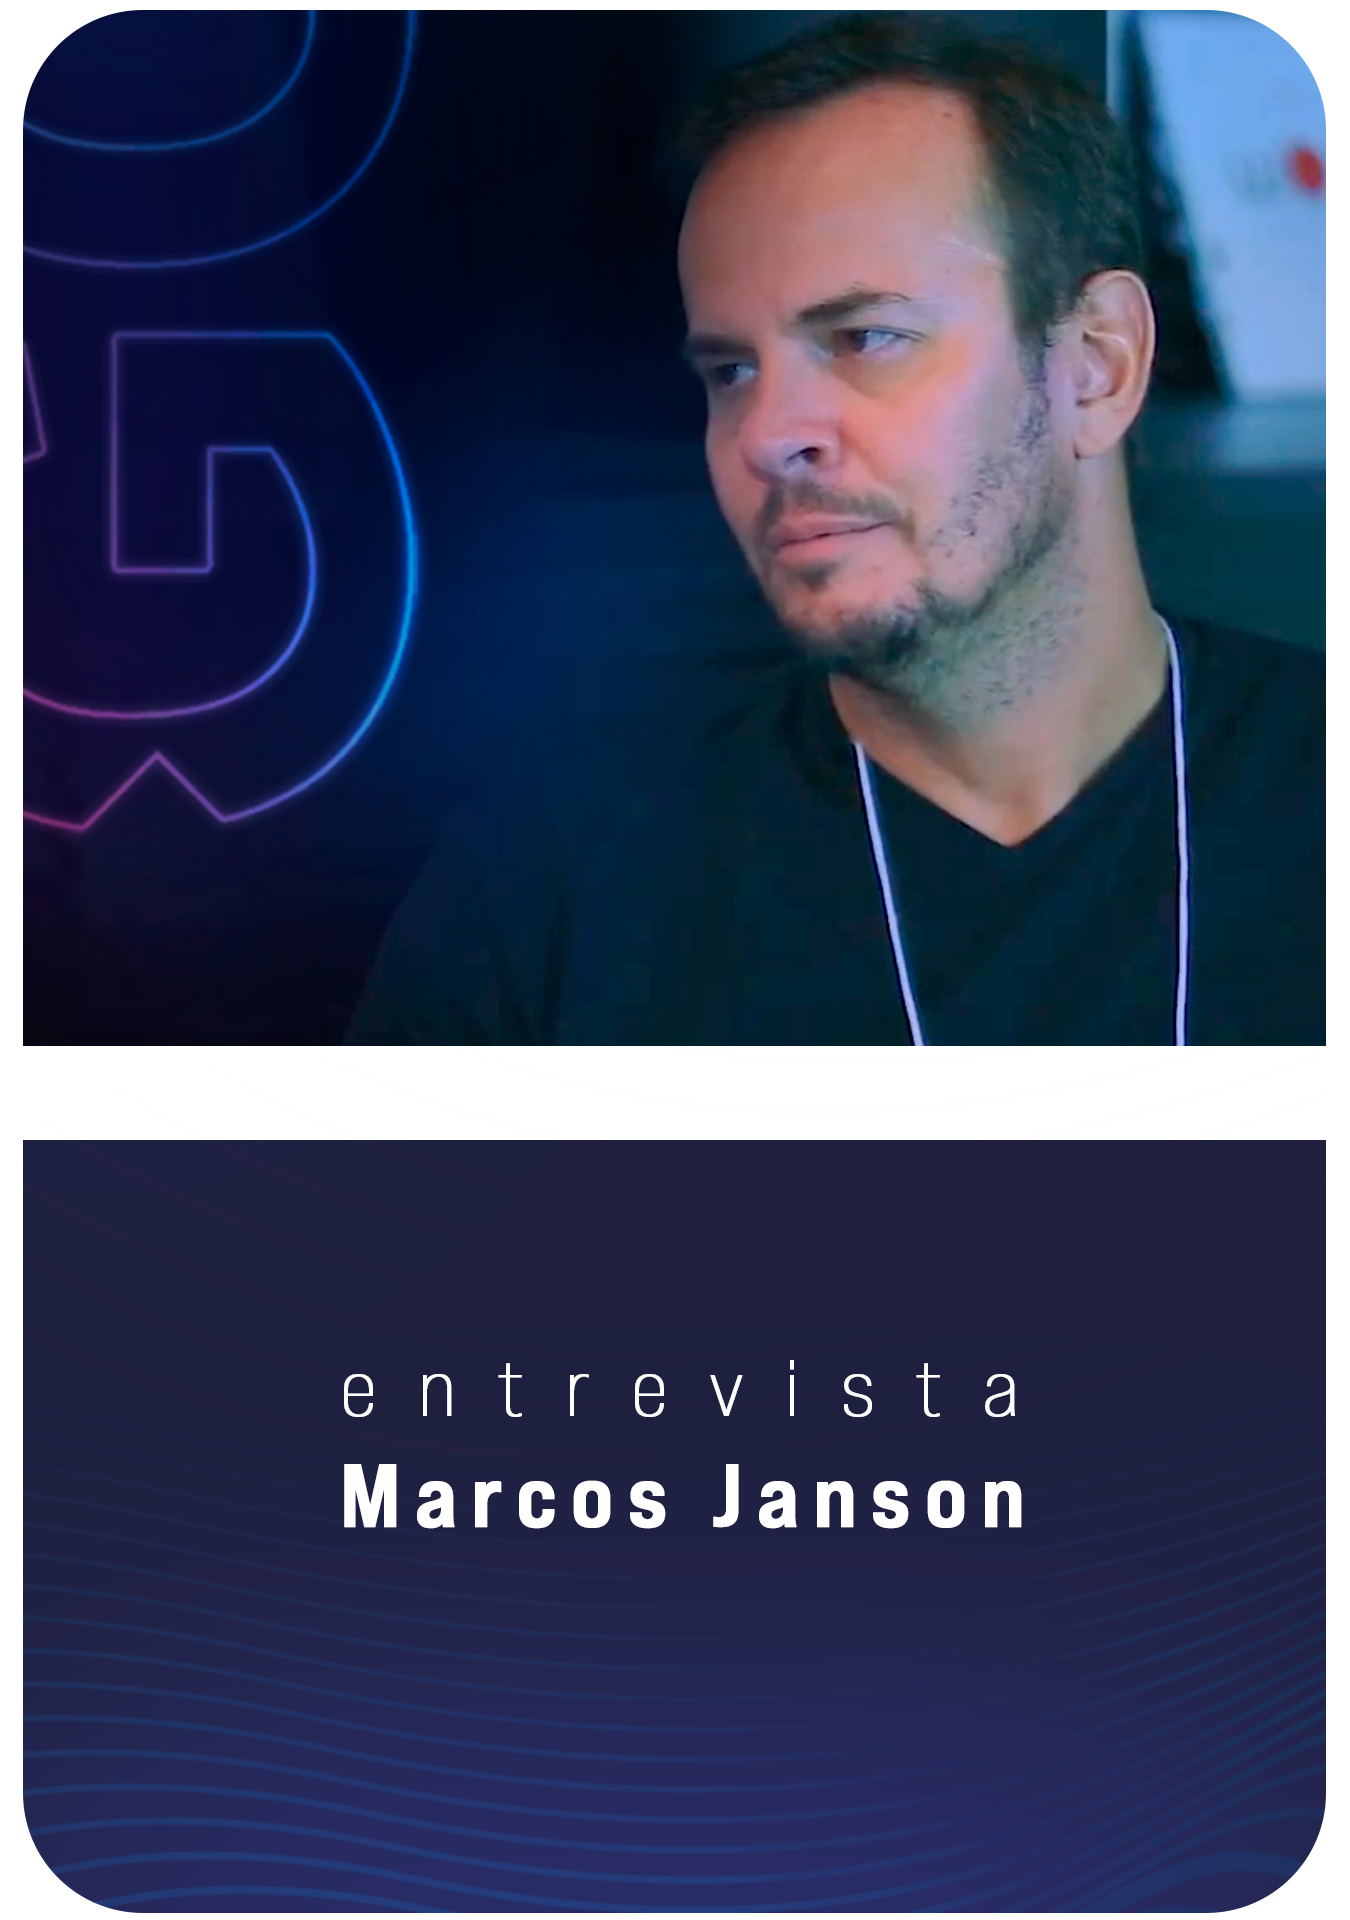 Dr. Marcos Janson